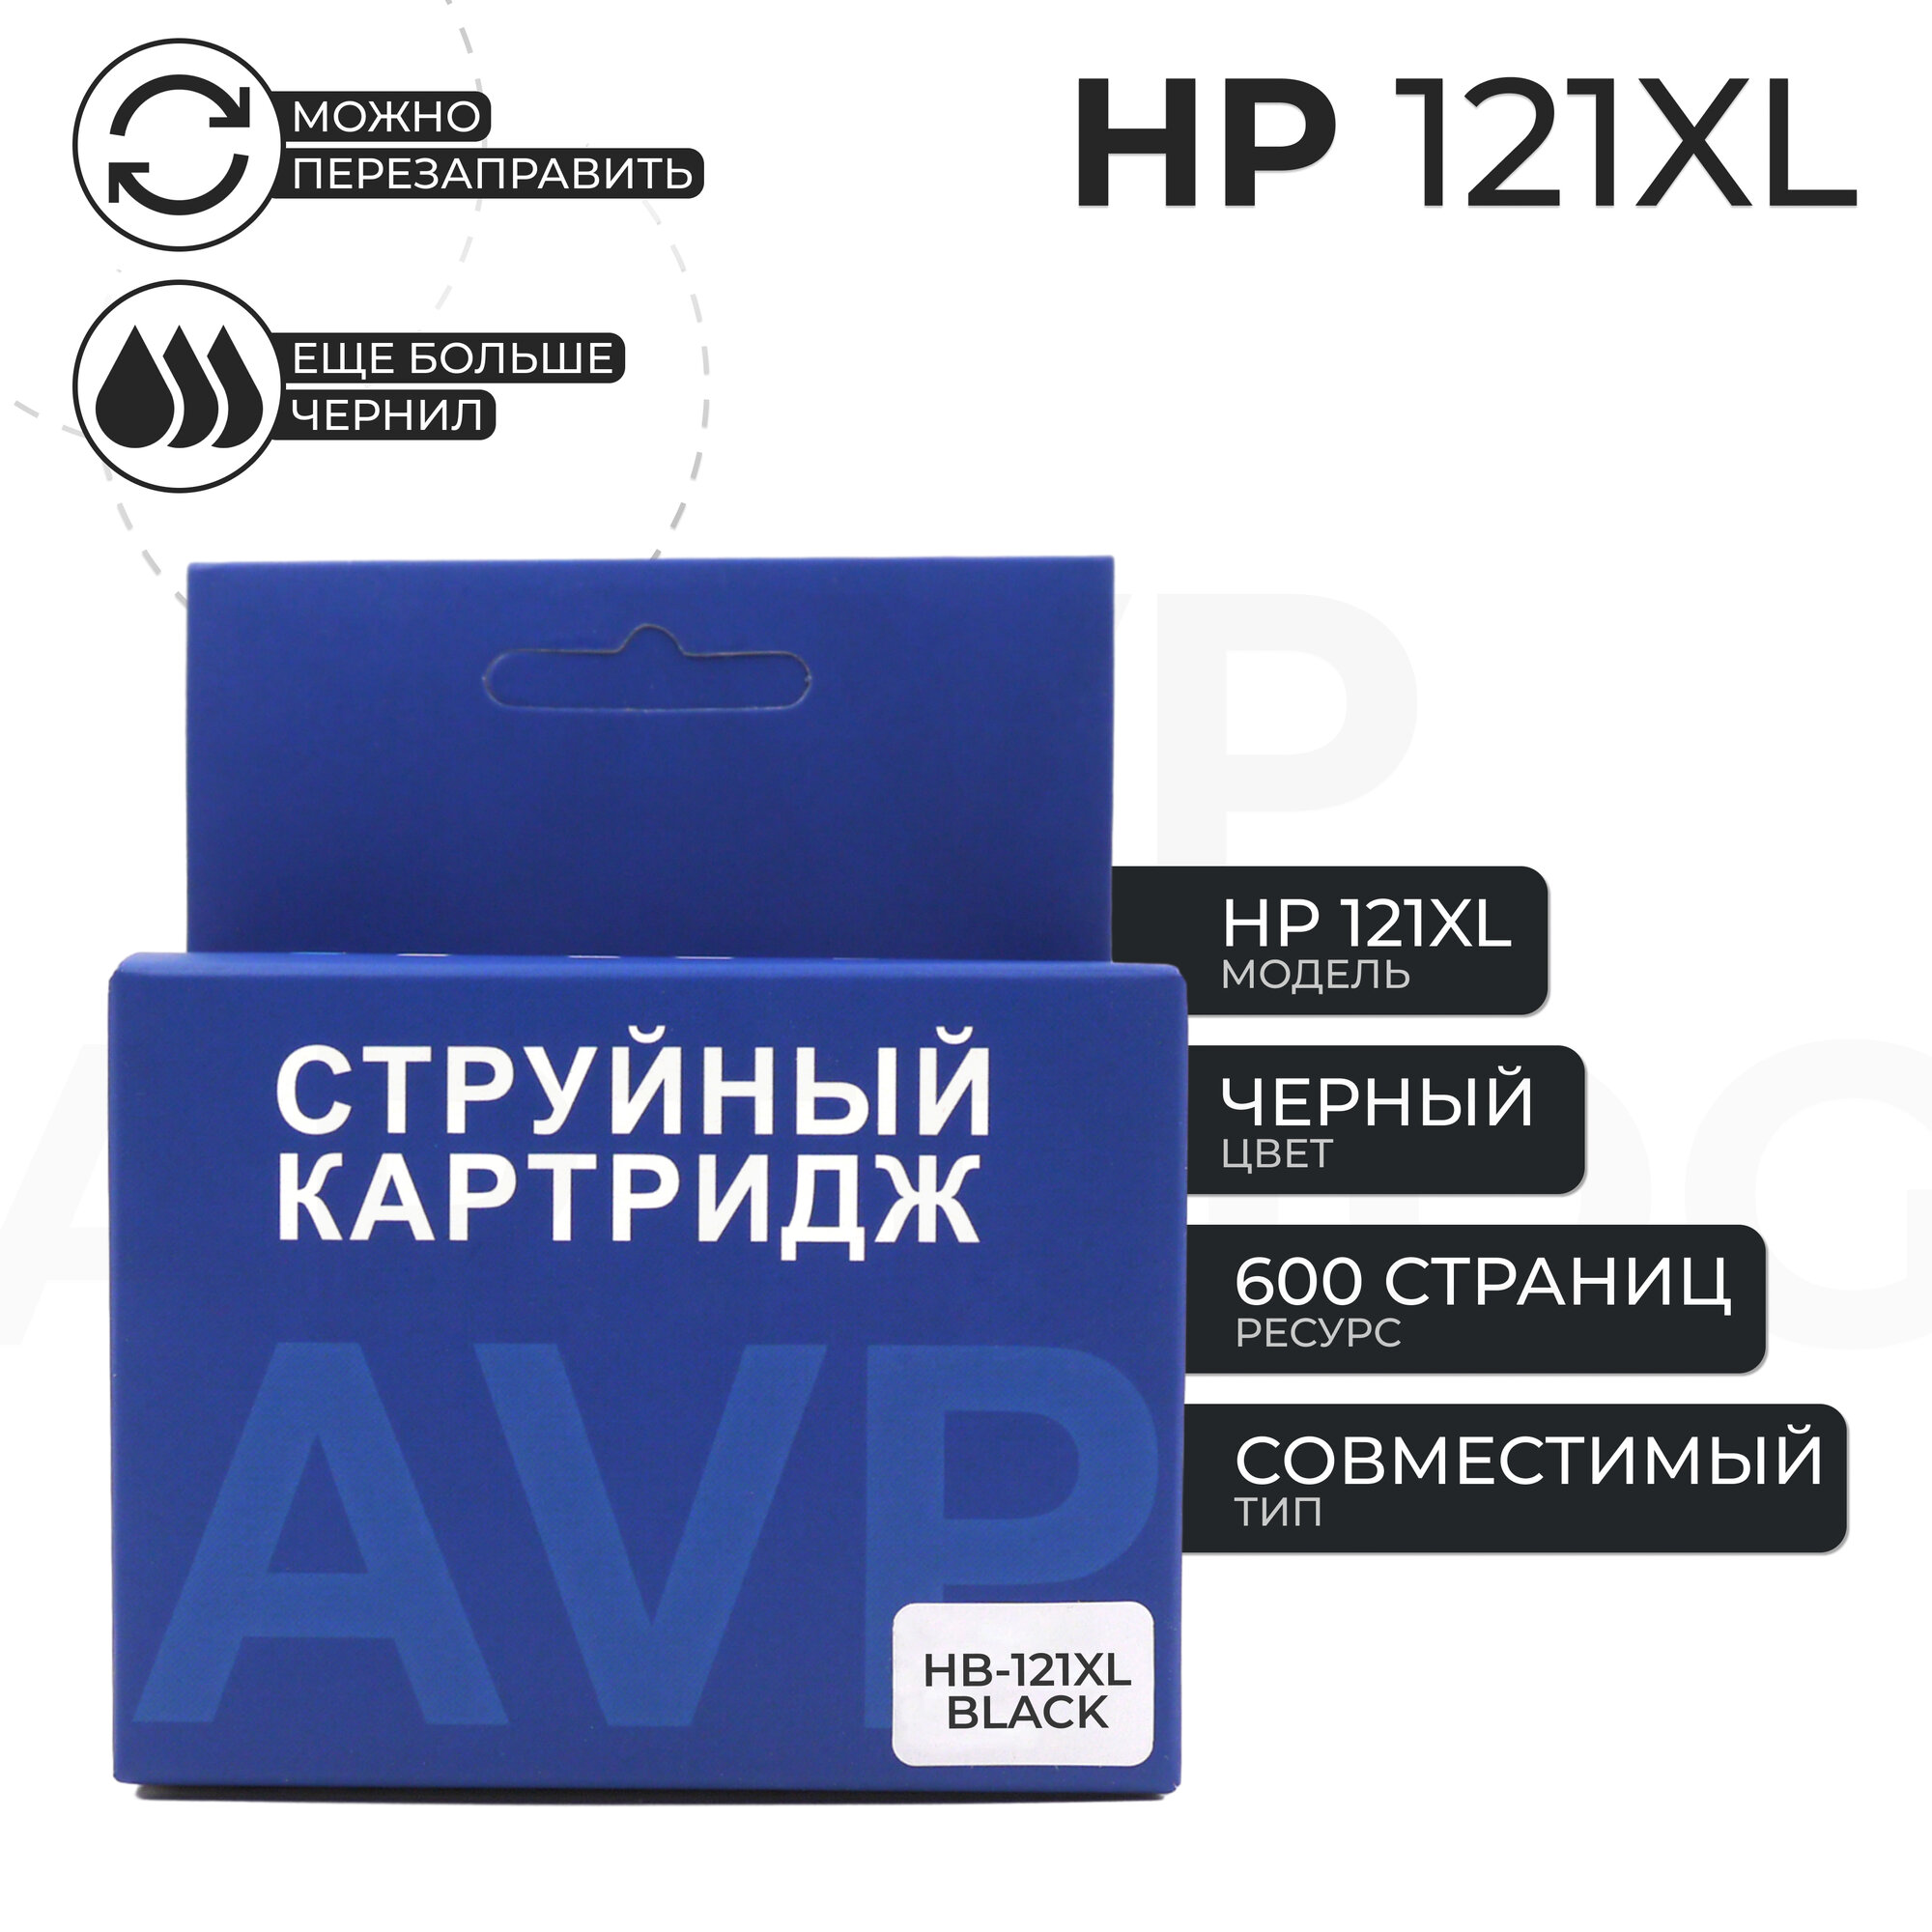 Картридж AVP 121 XL (121XL) для HP, черный